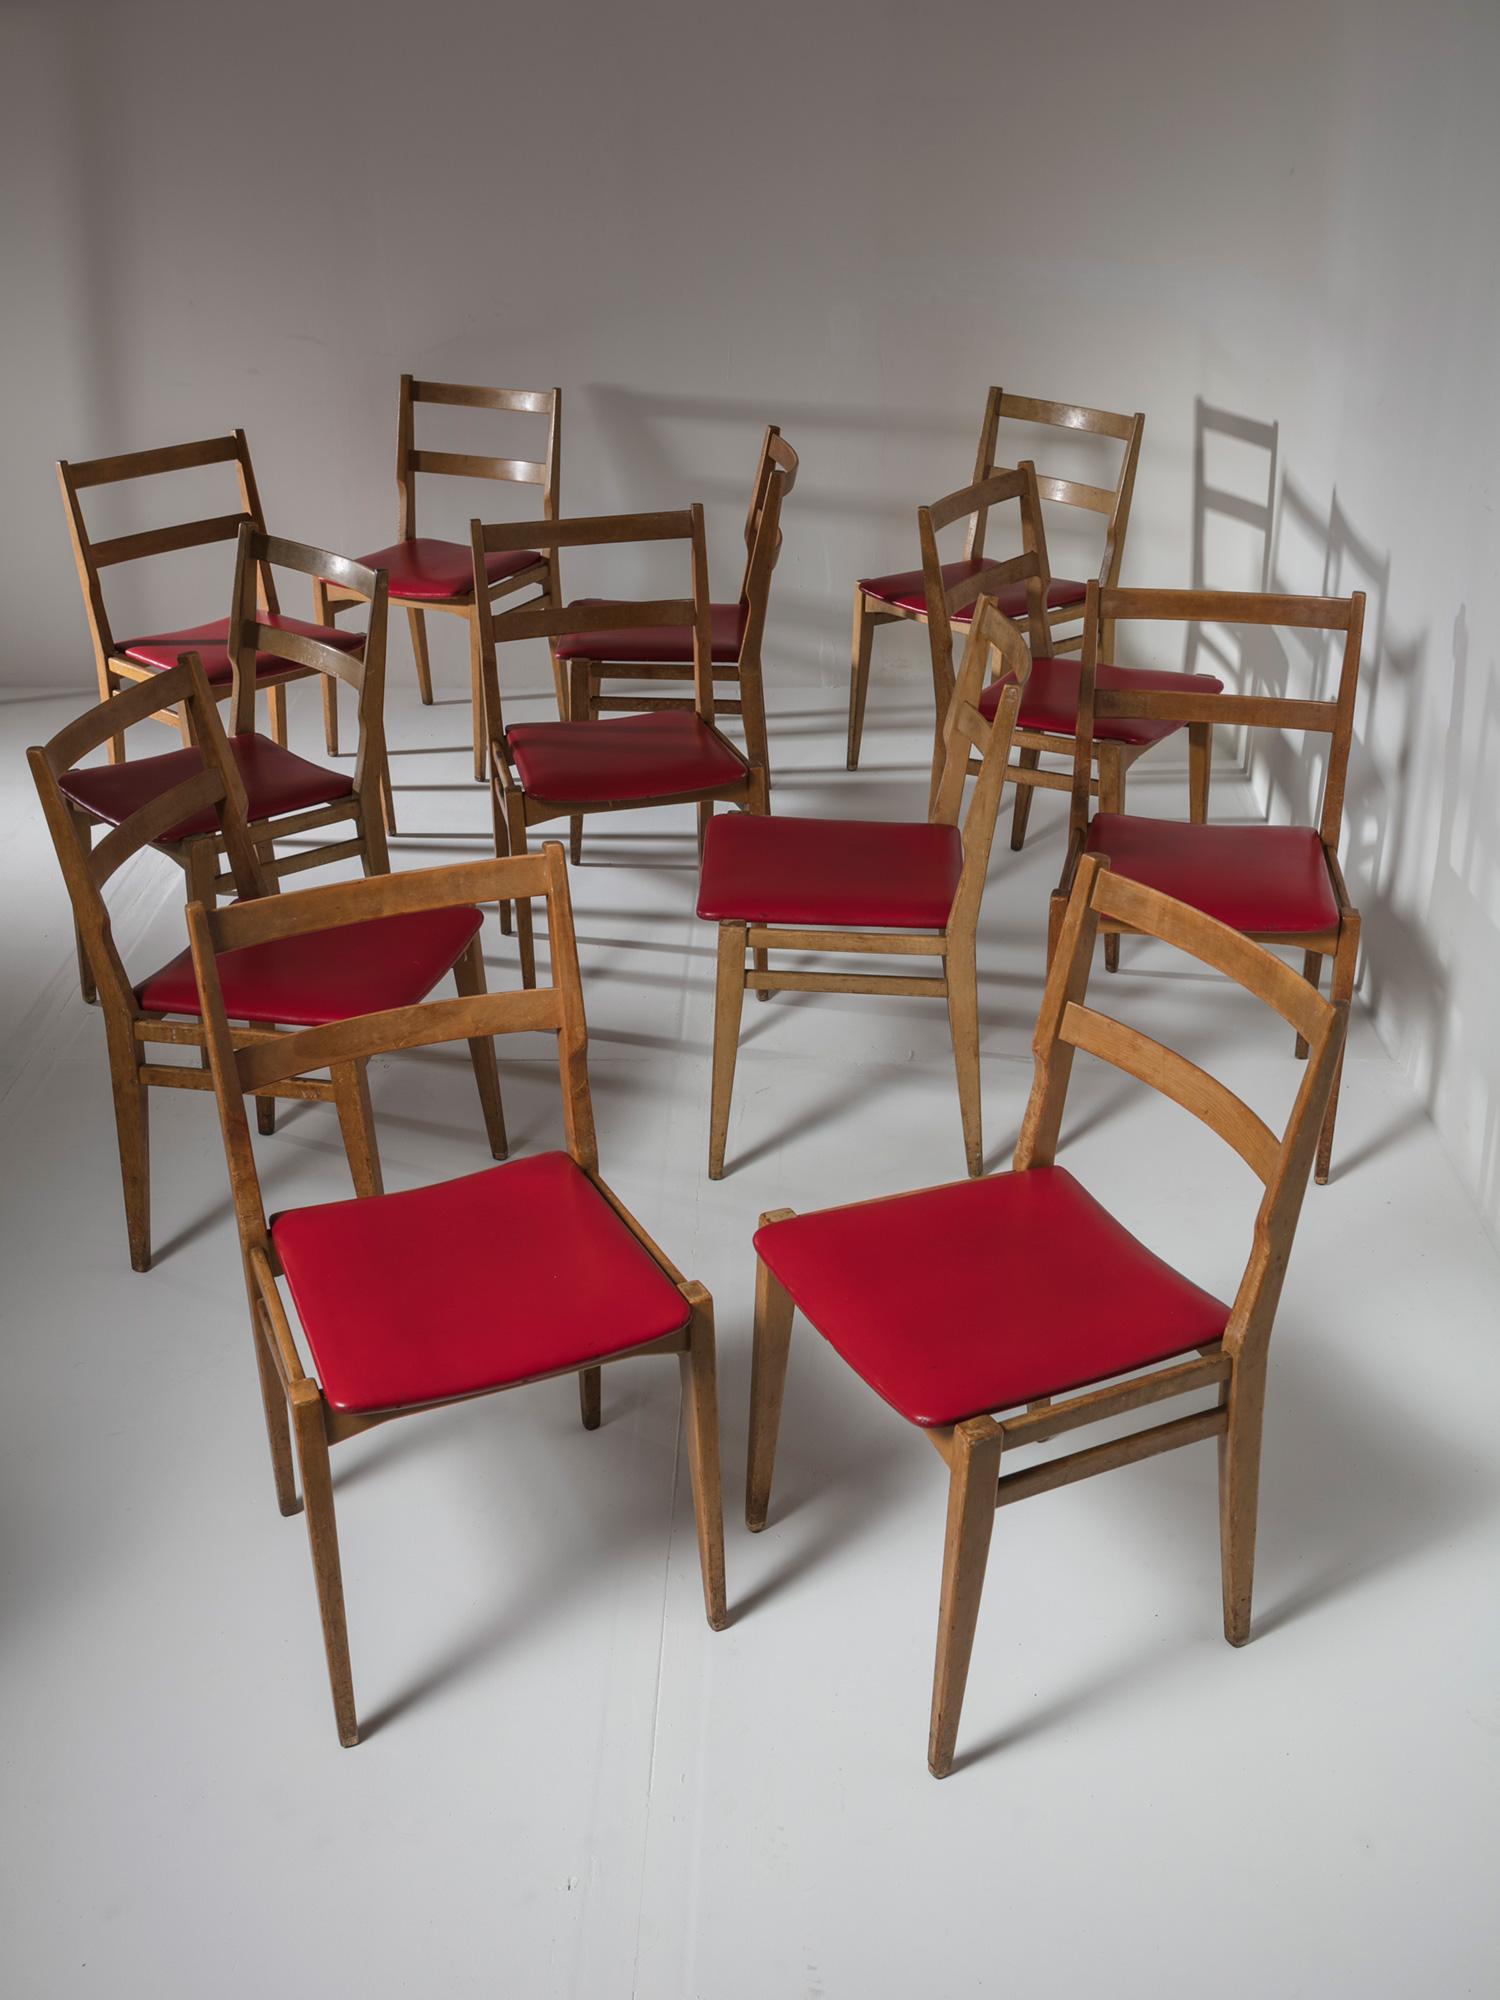 Satz von zwölf Esszimmerstühlen von Melchiorre BEGA für Cassina.
Bequeme und kompakte Stühle mit Kunstledersitzen.